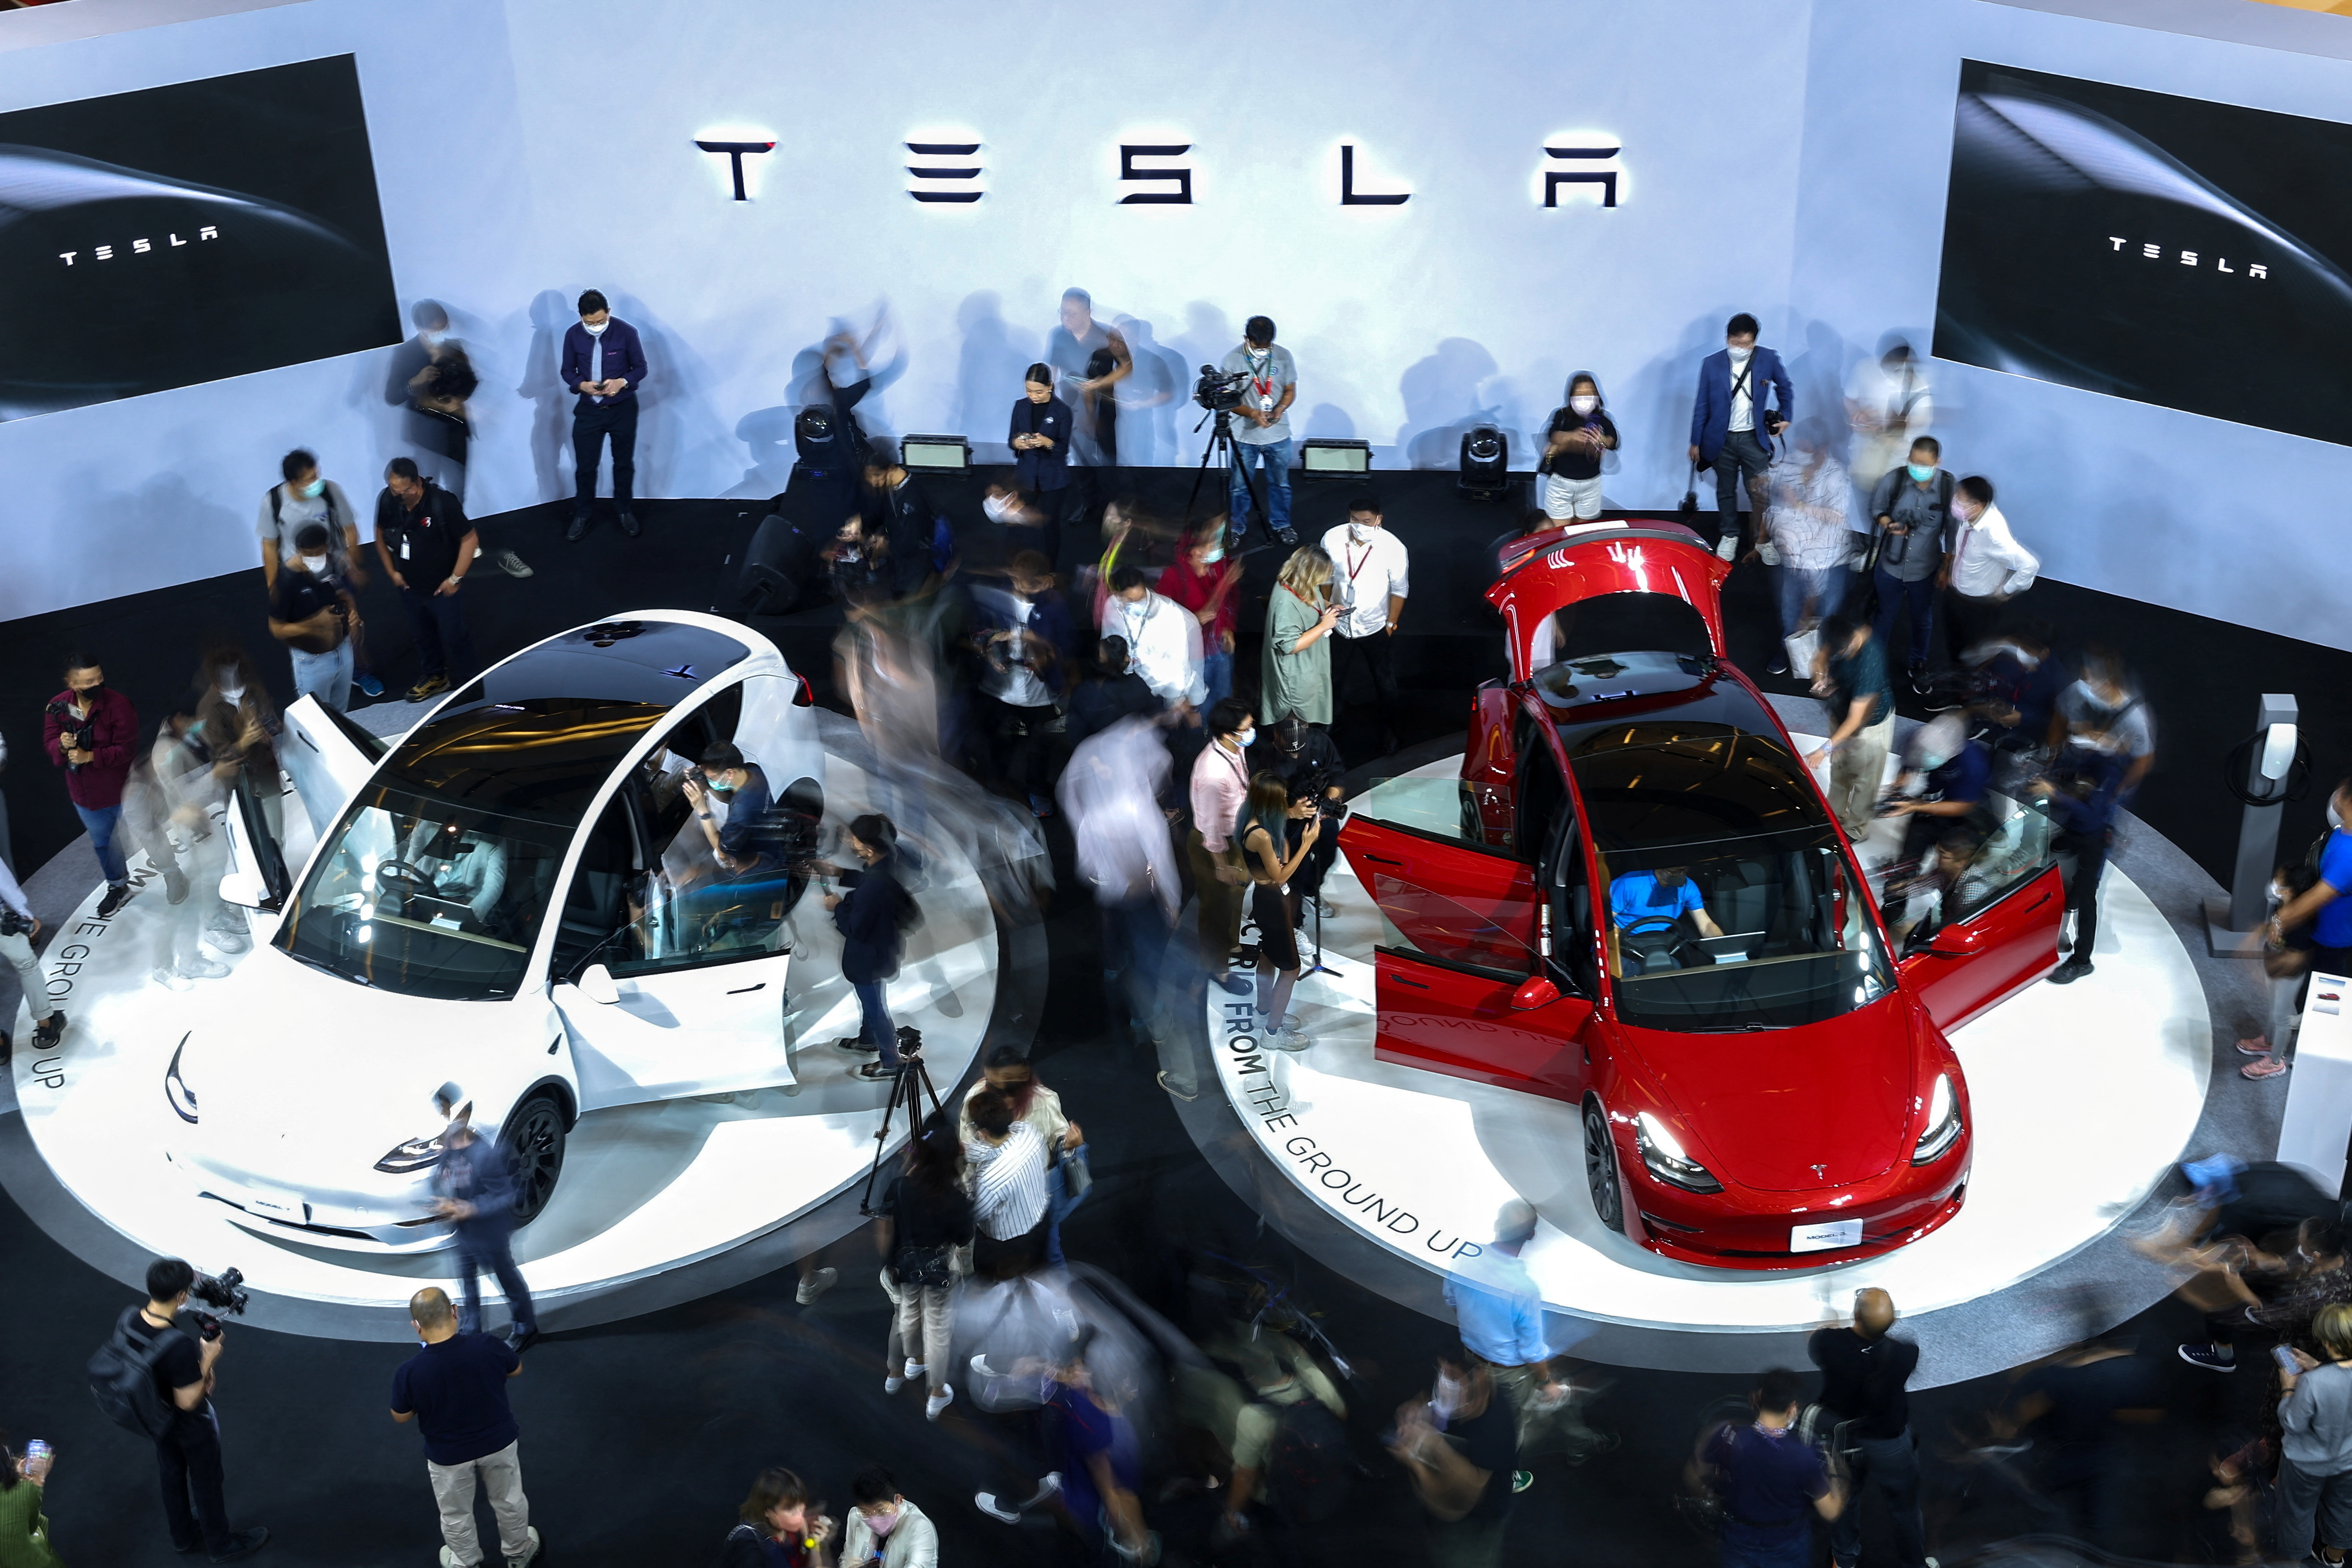 Tesla marque officiellement sa première entreprise commerciale en Thaïlande